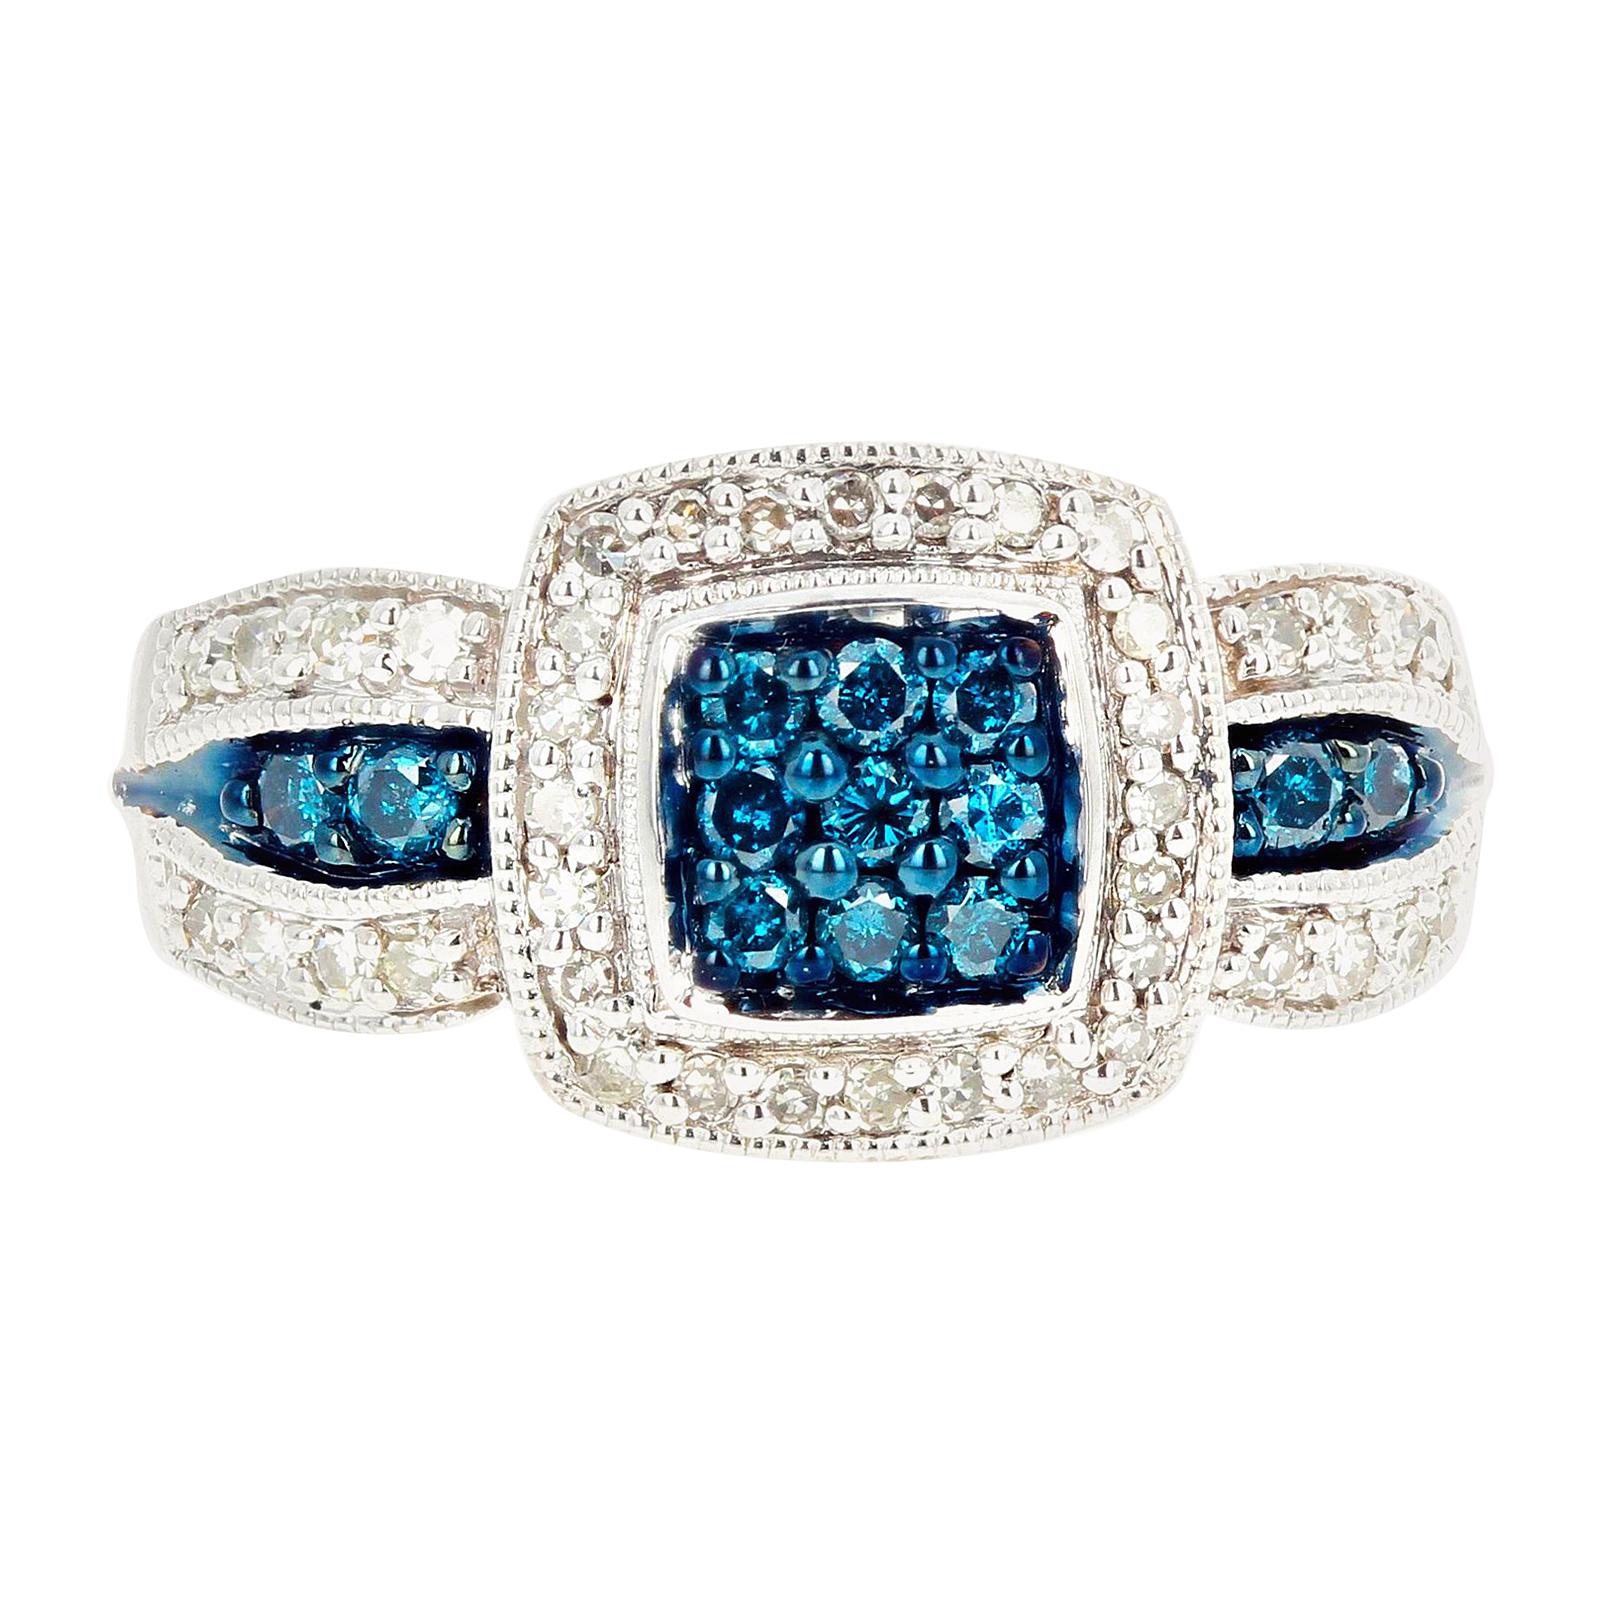 Gemjunky Blue Diamond and White Diamond Ring